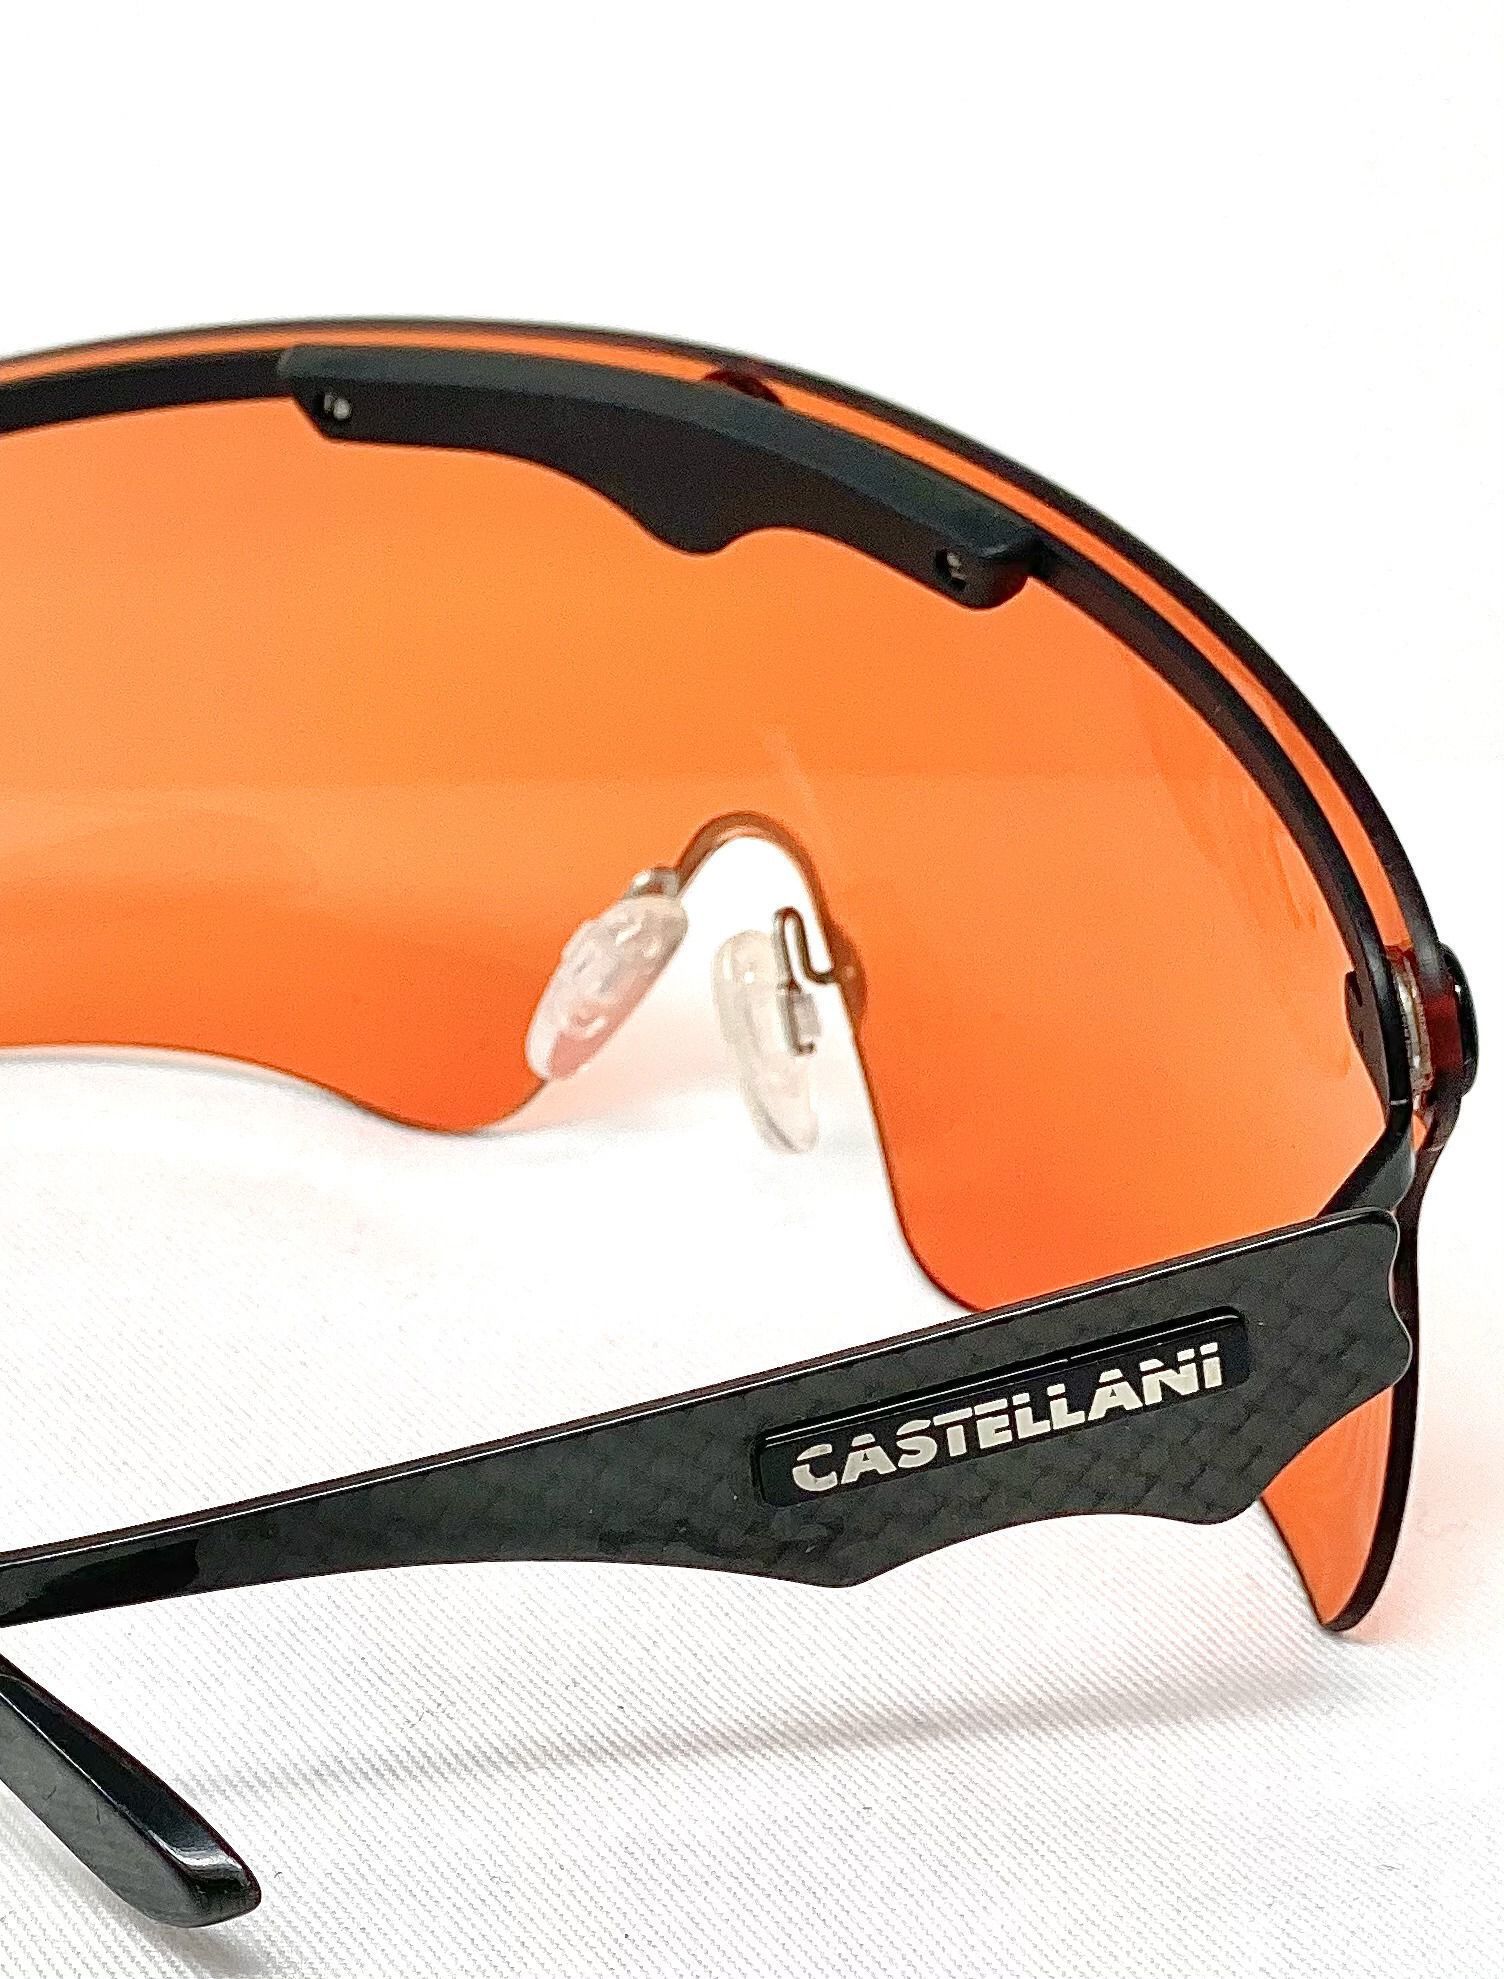 Gli occhiali da tiro Castellani C-Mask Pro con L’inserto in gomma anti-sudore.